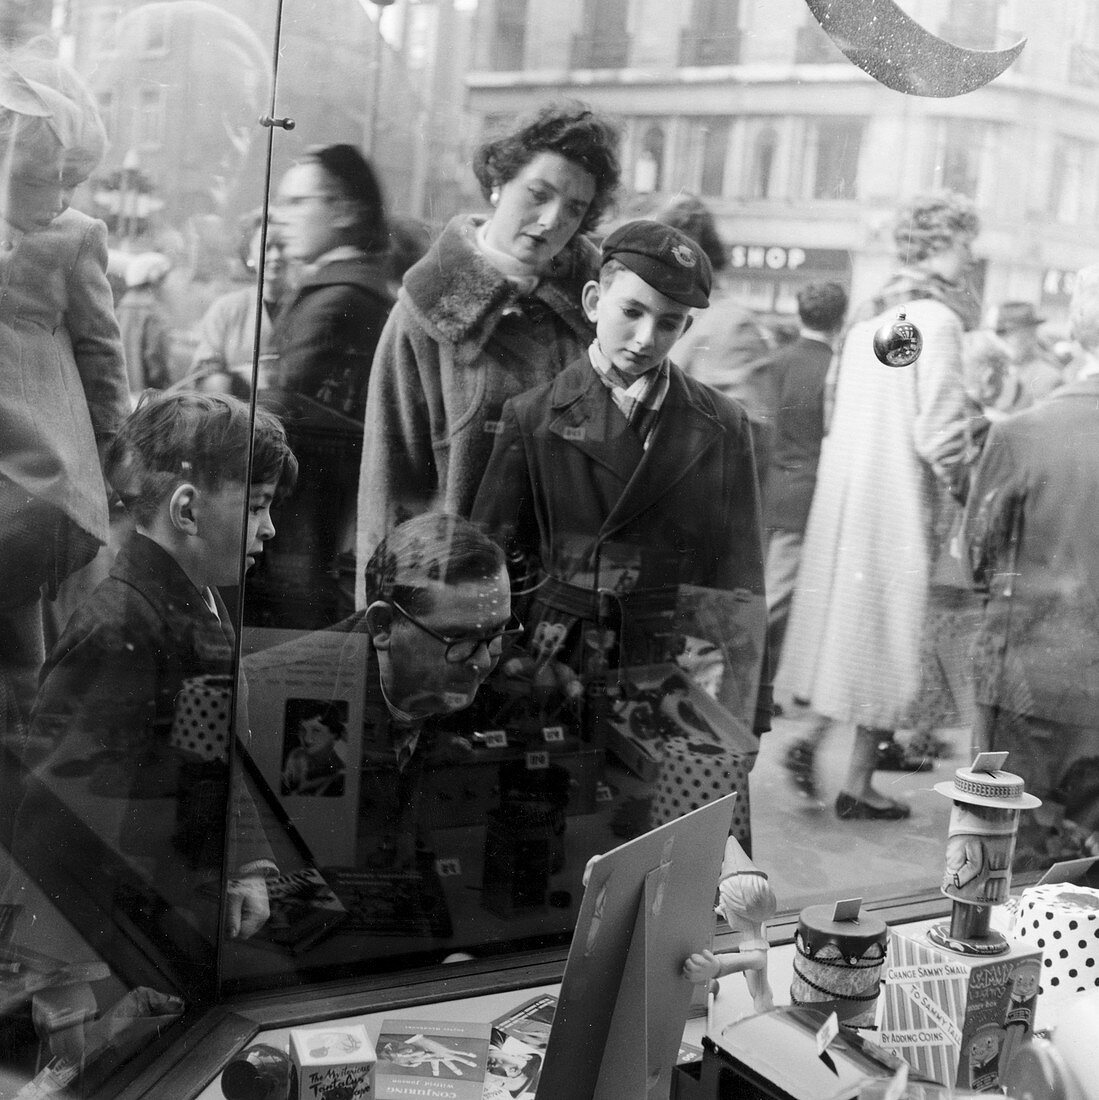 Christmas shoppers outside a toyshop, London, 1957